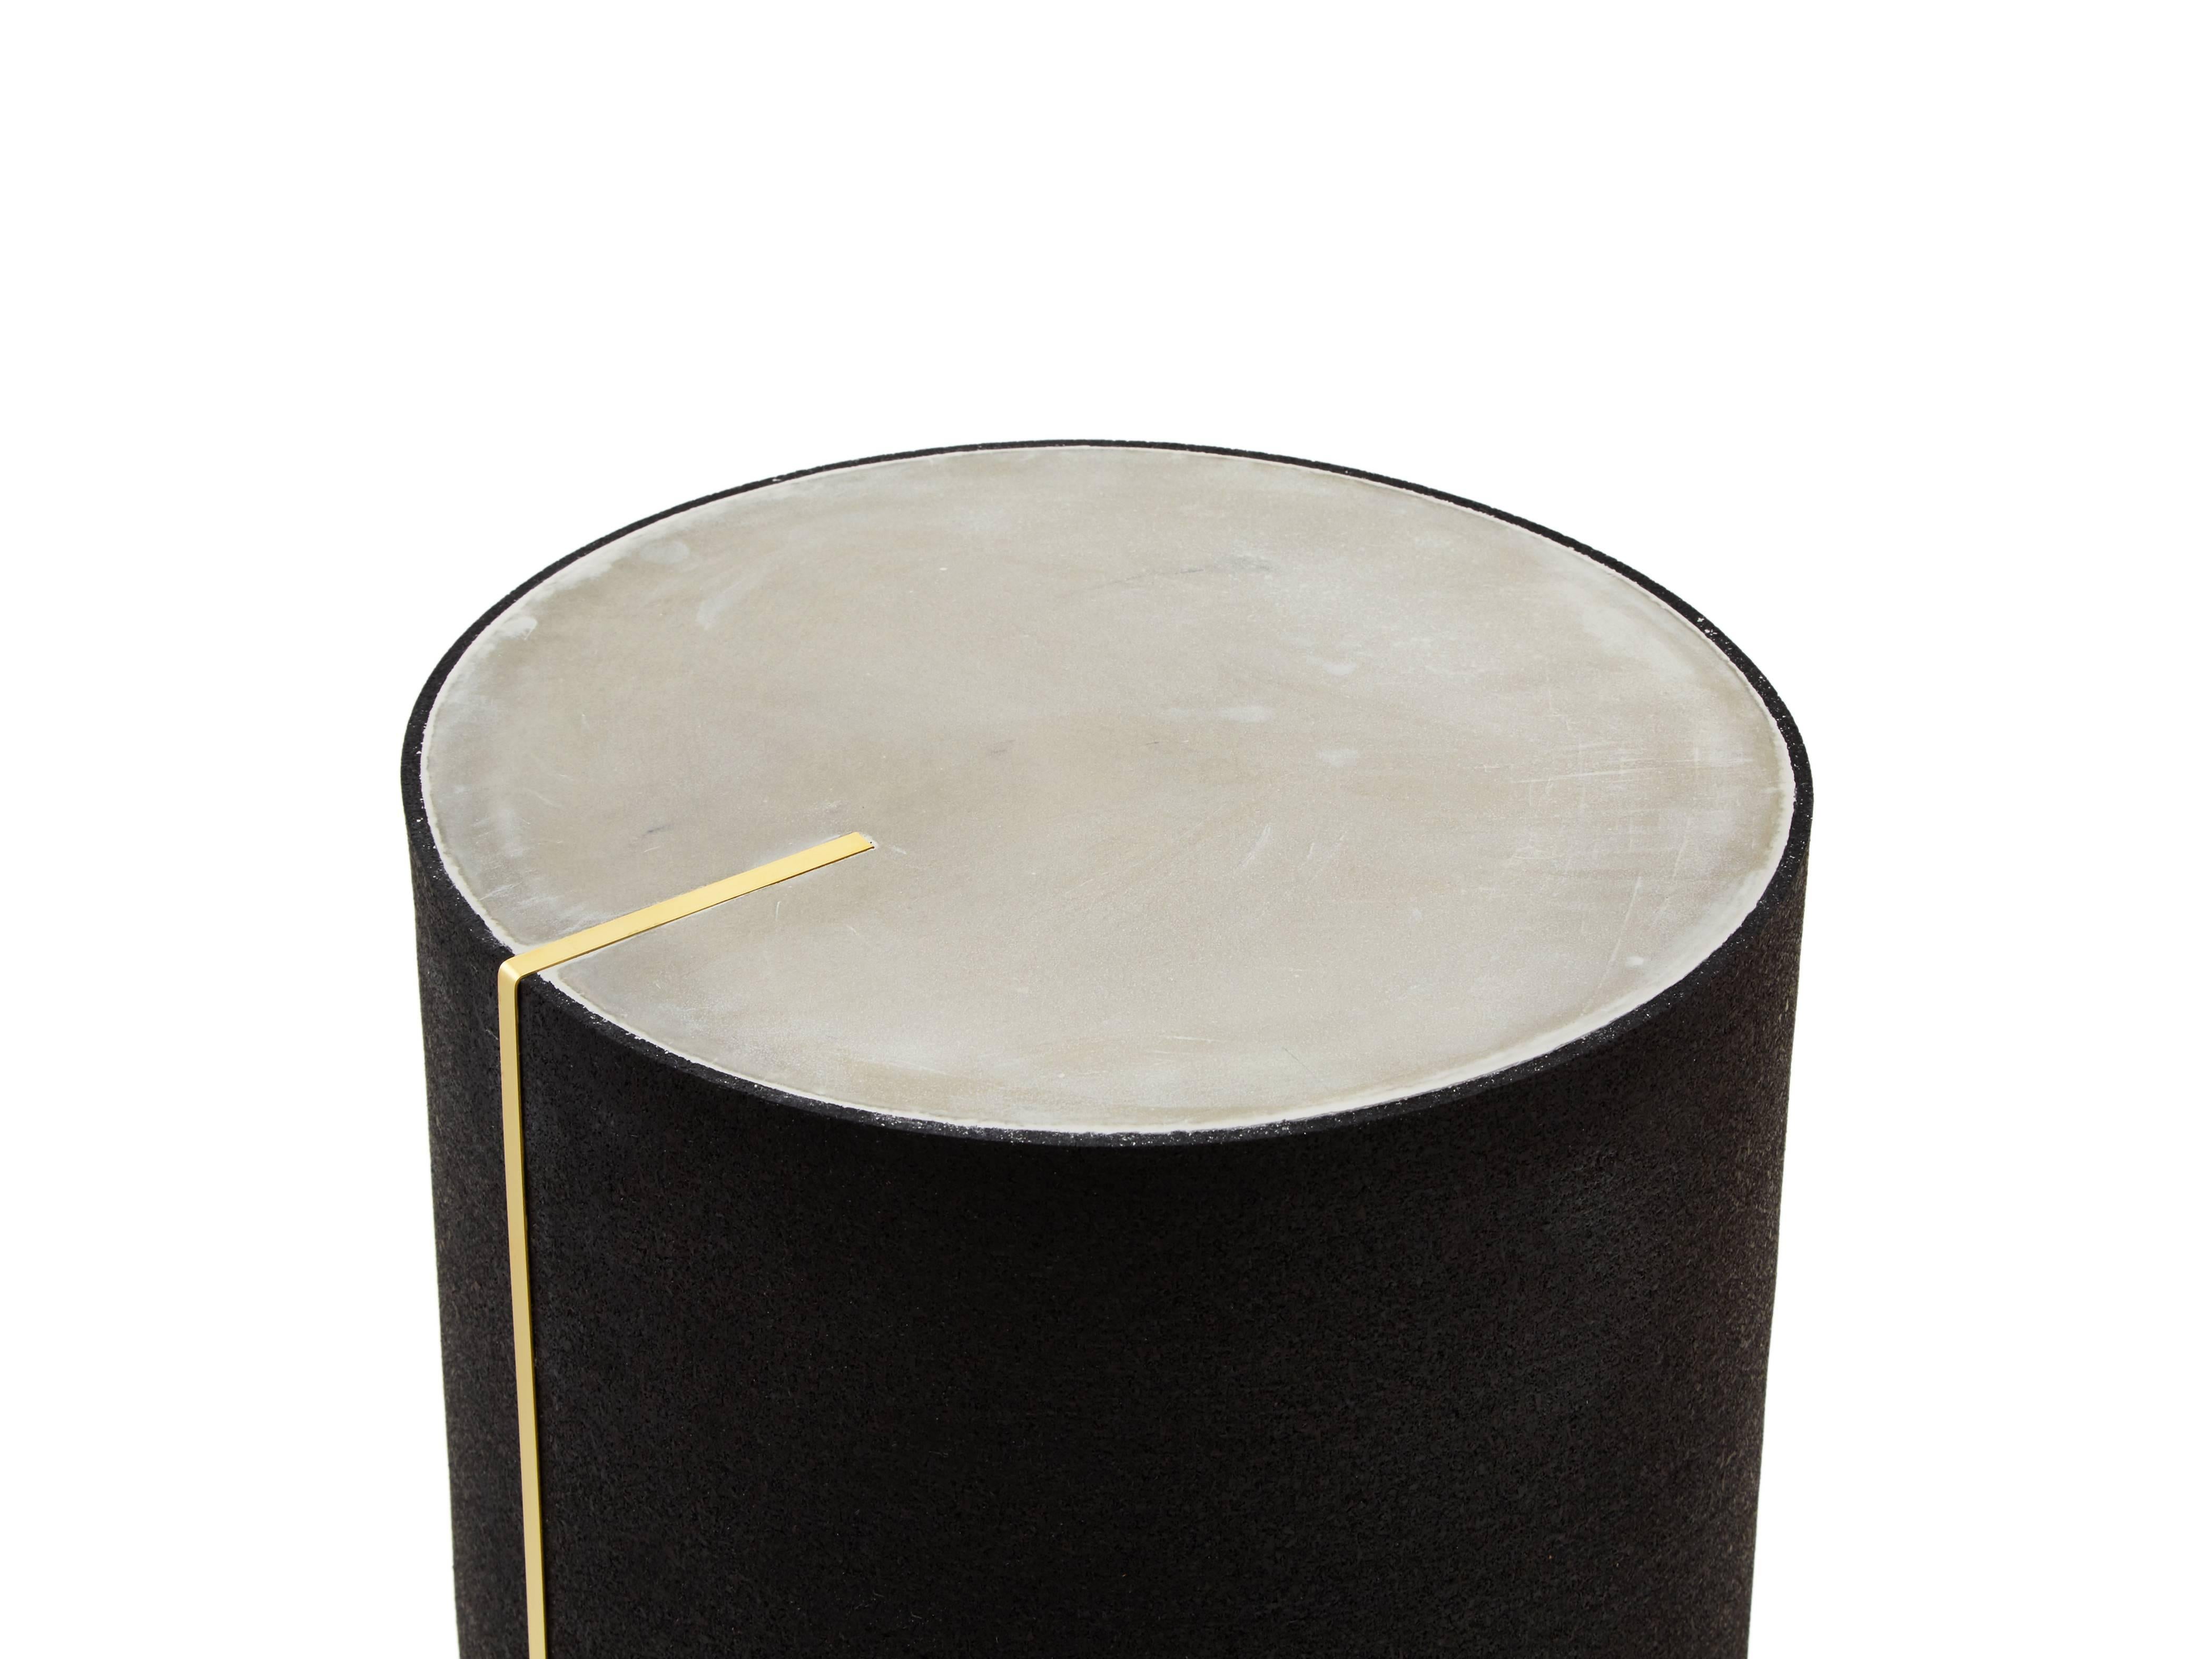 Zylinder aus Gummi und Beton, gegossen mit einer Messingeinlage.
Auch in Schwarz, Royal und Gris erhältlich.

Maße: Durchmesser 10